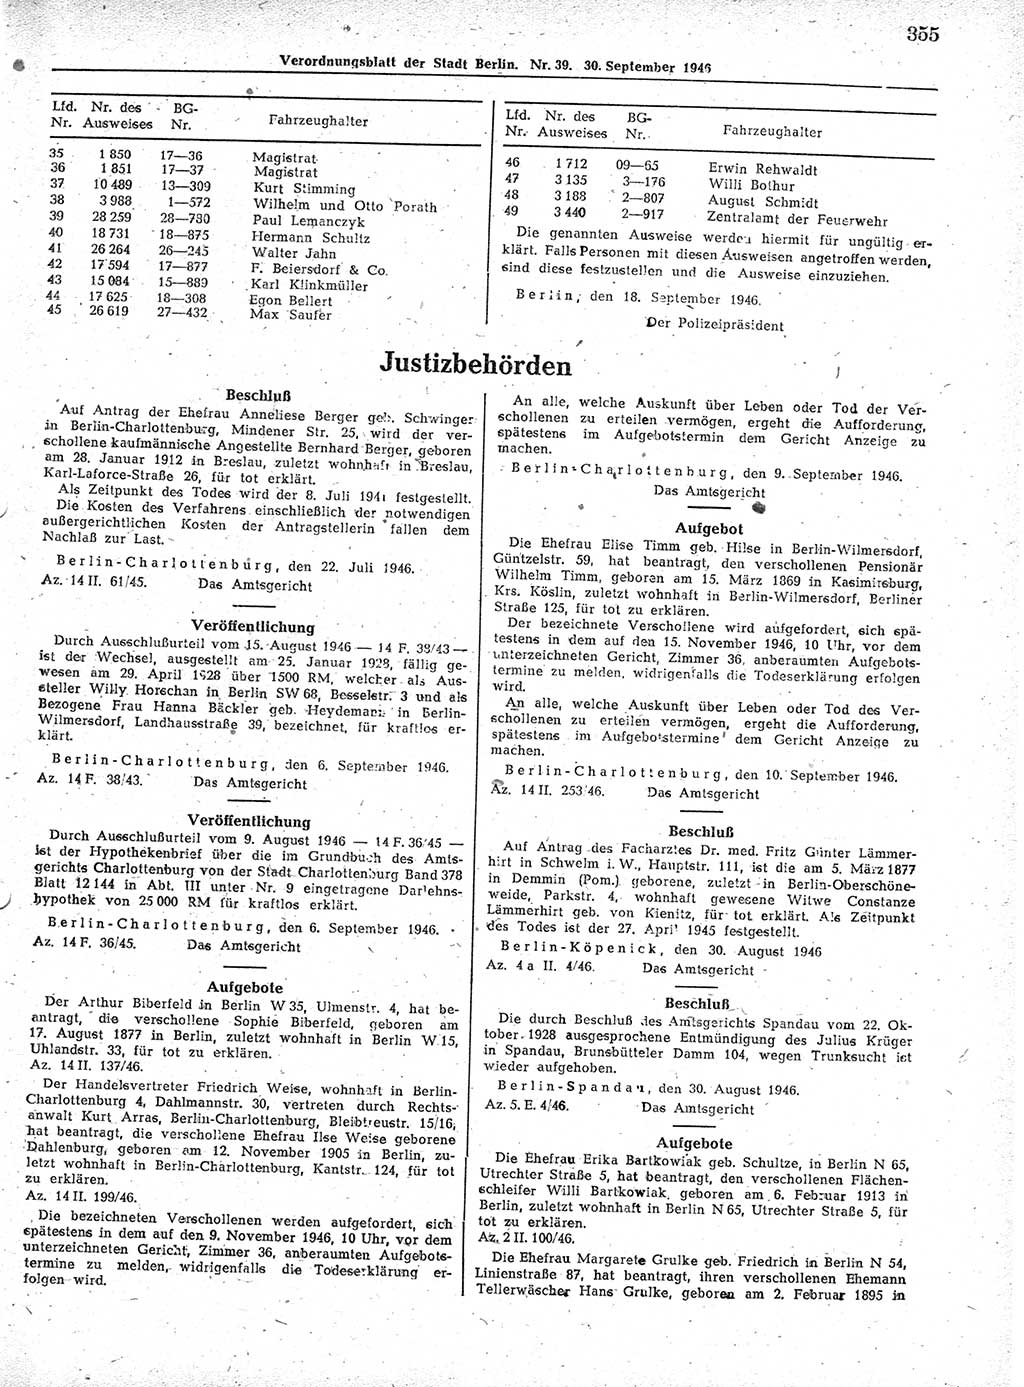 Verordnungsblatt (VOBl.) der Stadt Berlin, für Groß-Berlin 1946, Seite 355 (VOBl. Bln. 1946, S. 355)